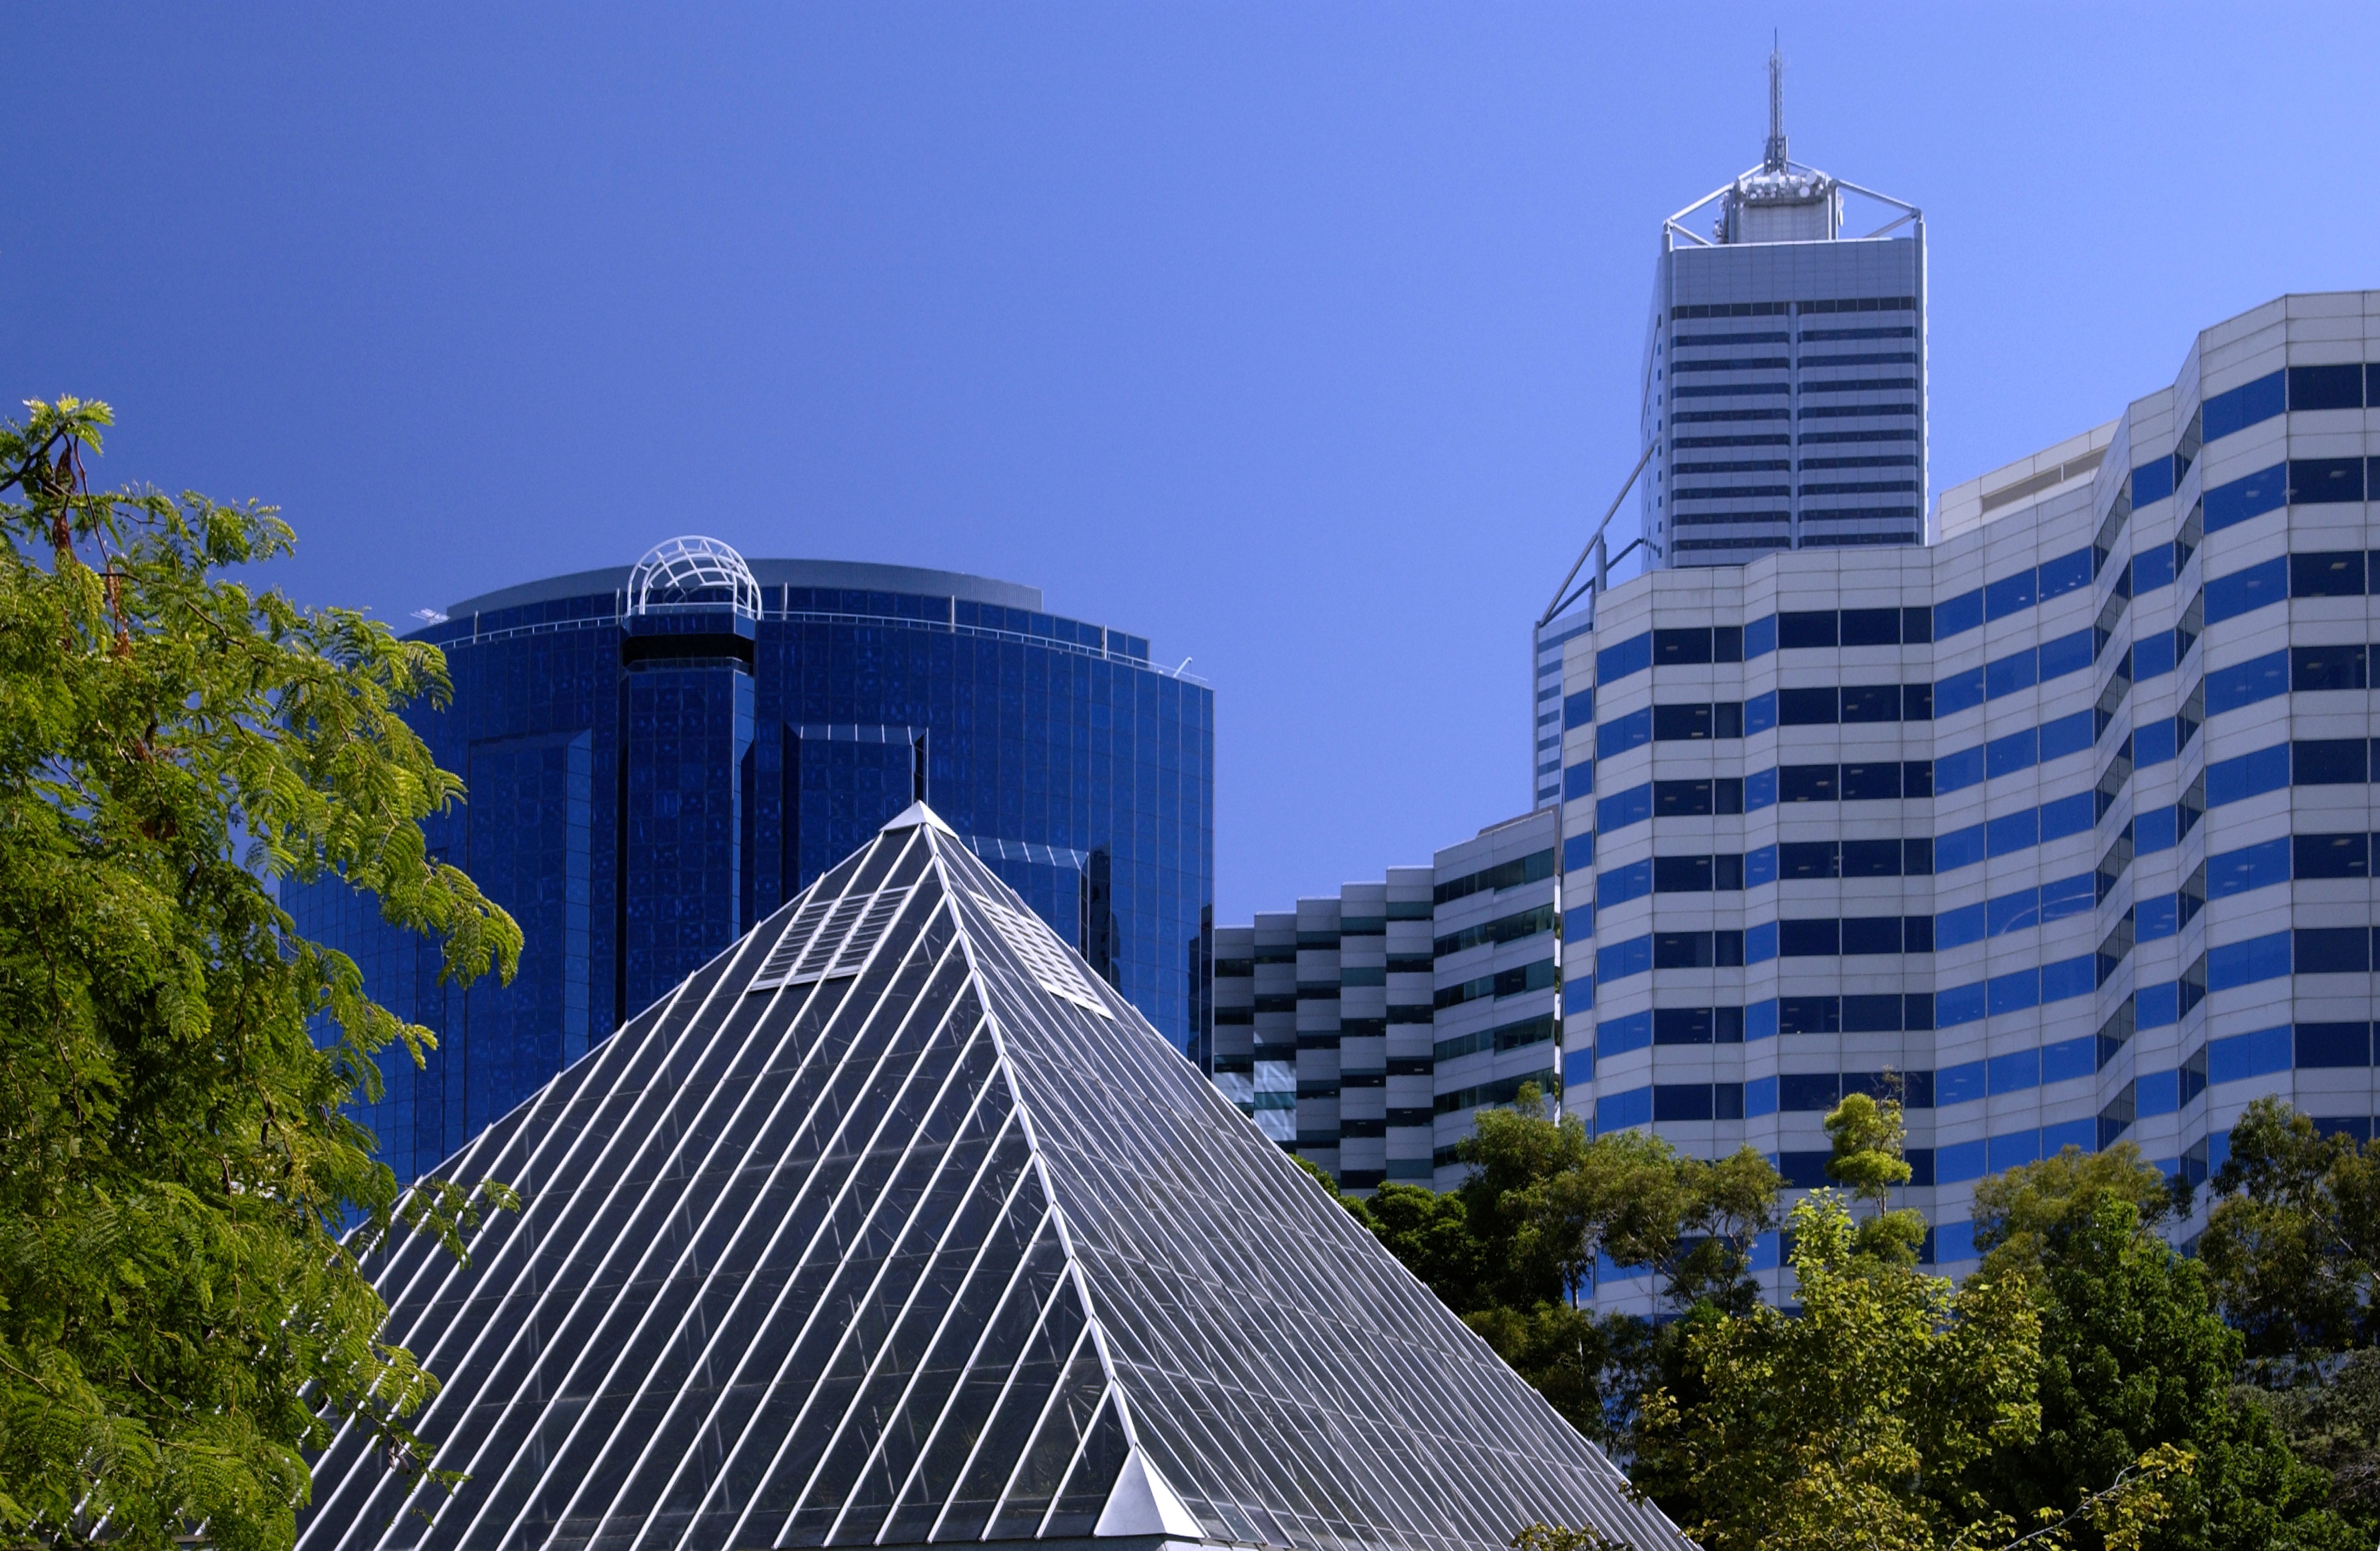 modern-architecture-in-the-city-of-perth-australi-2021-09-03-13-34-35-utc